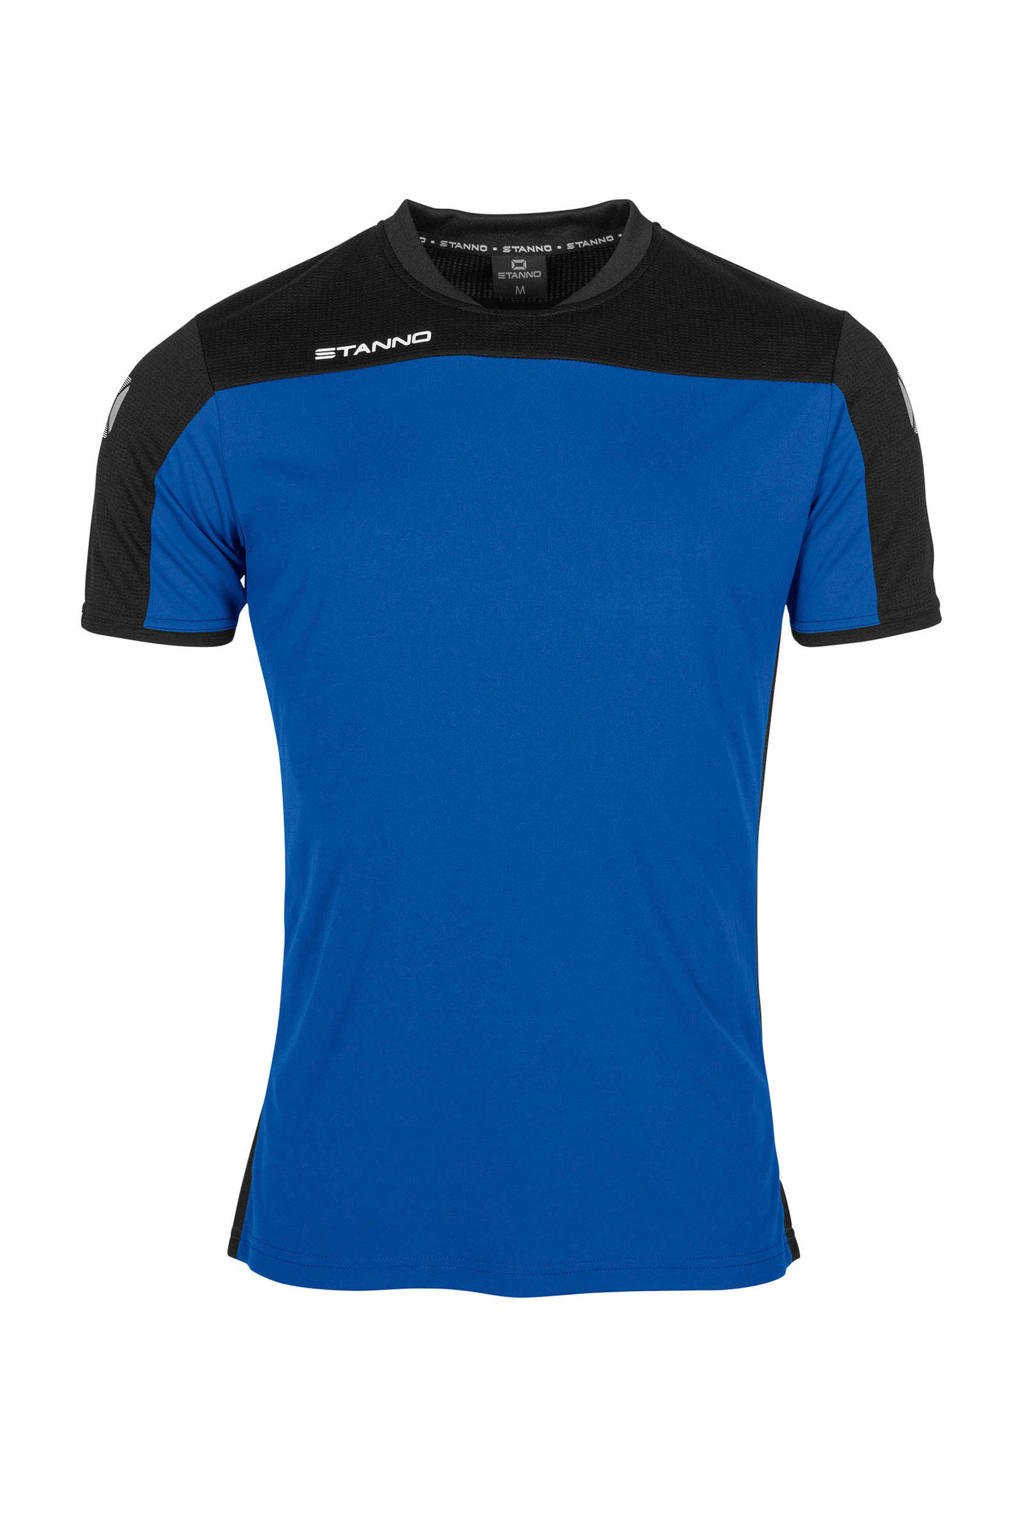 Blauw en zwarte jongens Stanno Junior voetbalshirt van polyester met korte mouwen, ronde hals en mesh